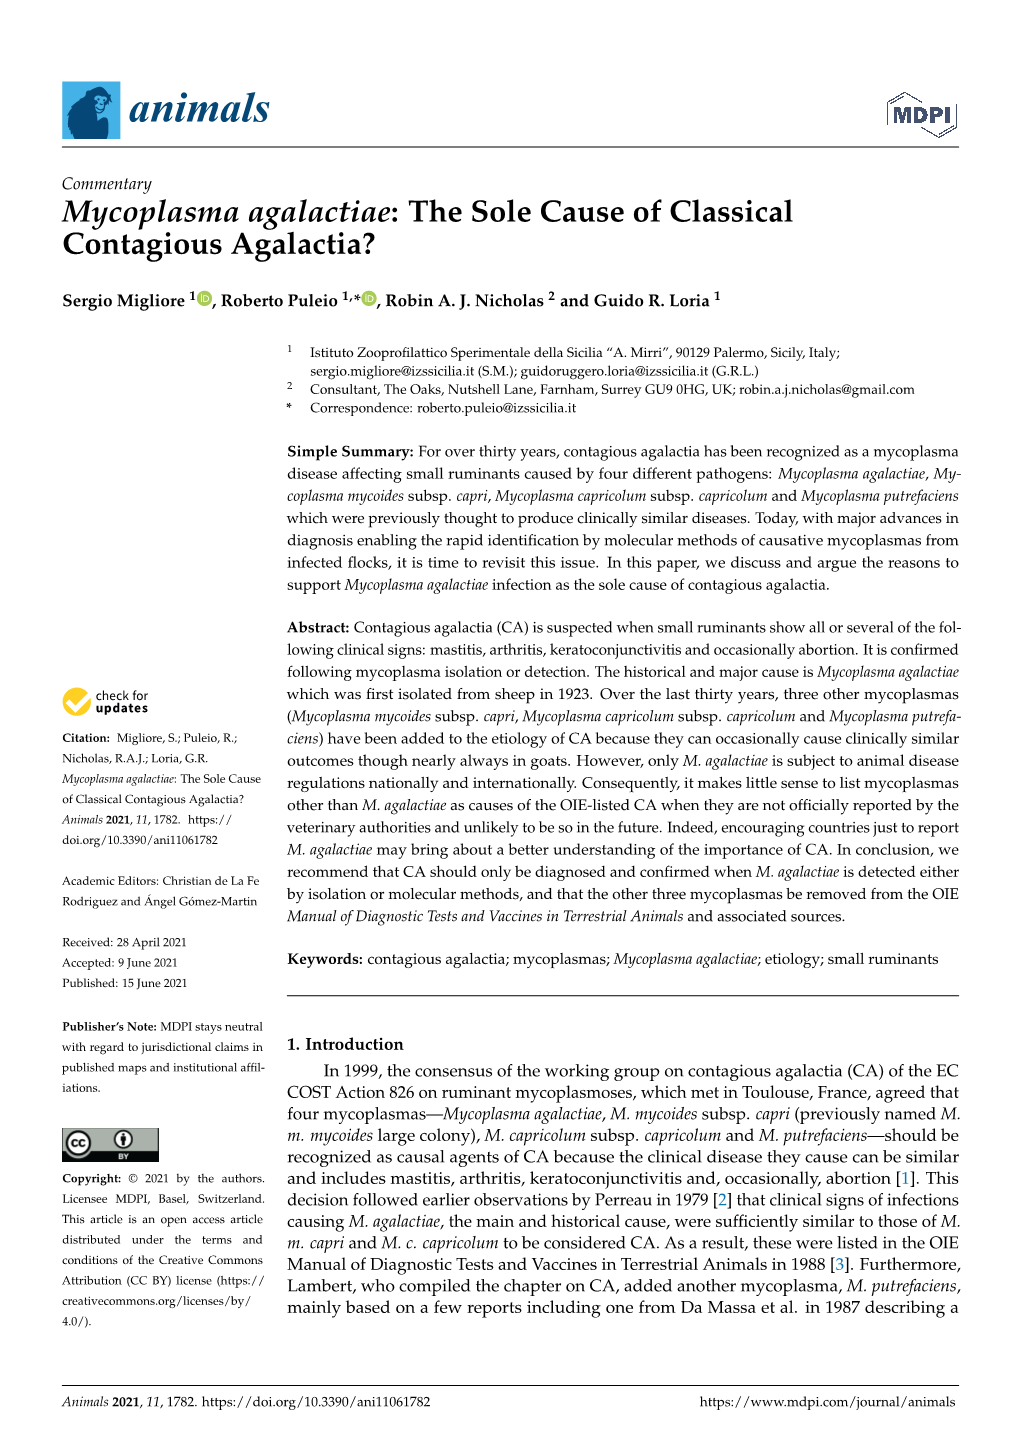 Mycoplasma Agalactiae: the Sole Cause of Classical Contagious Agalactia?